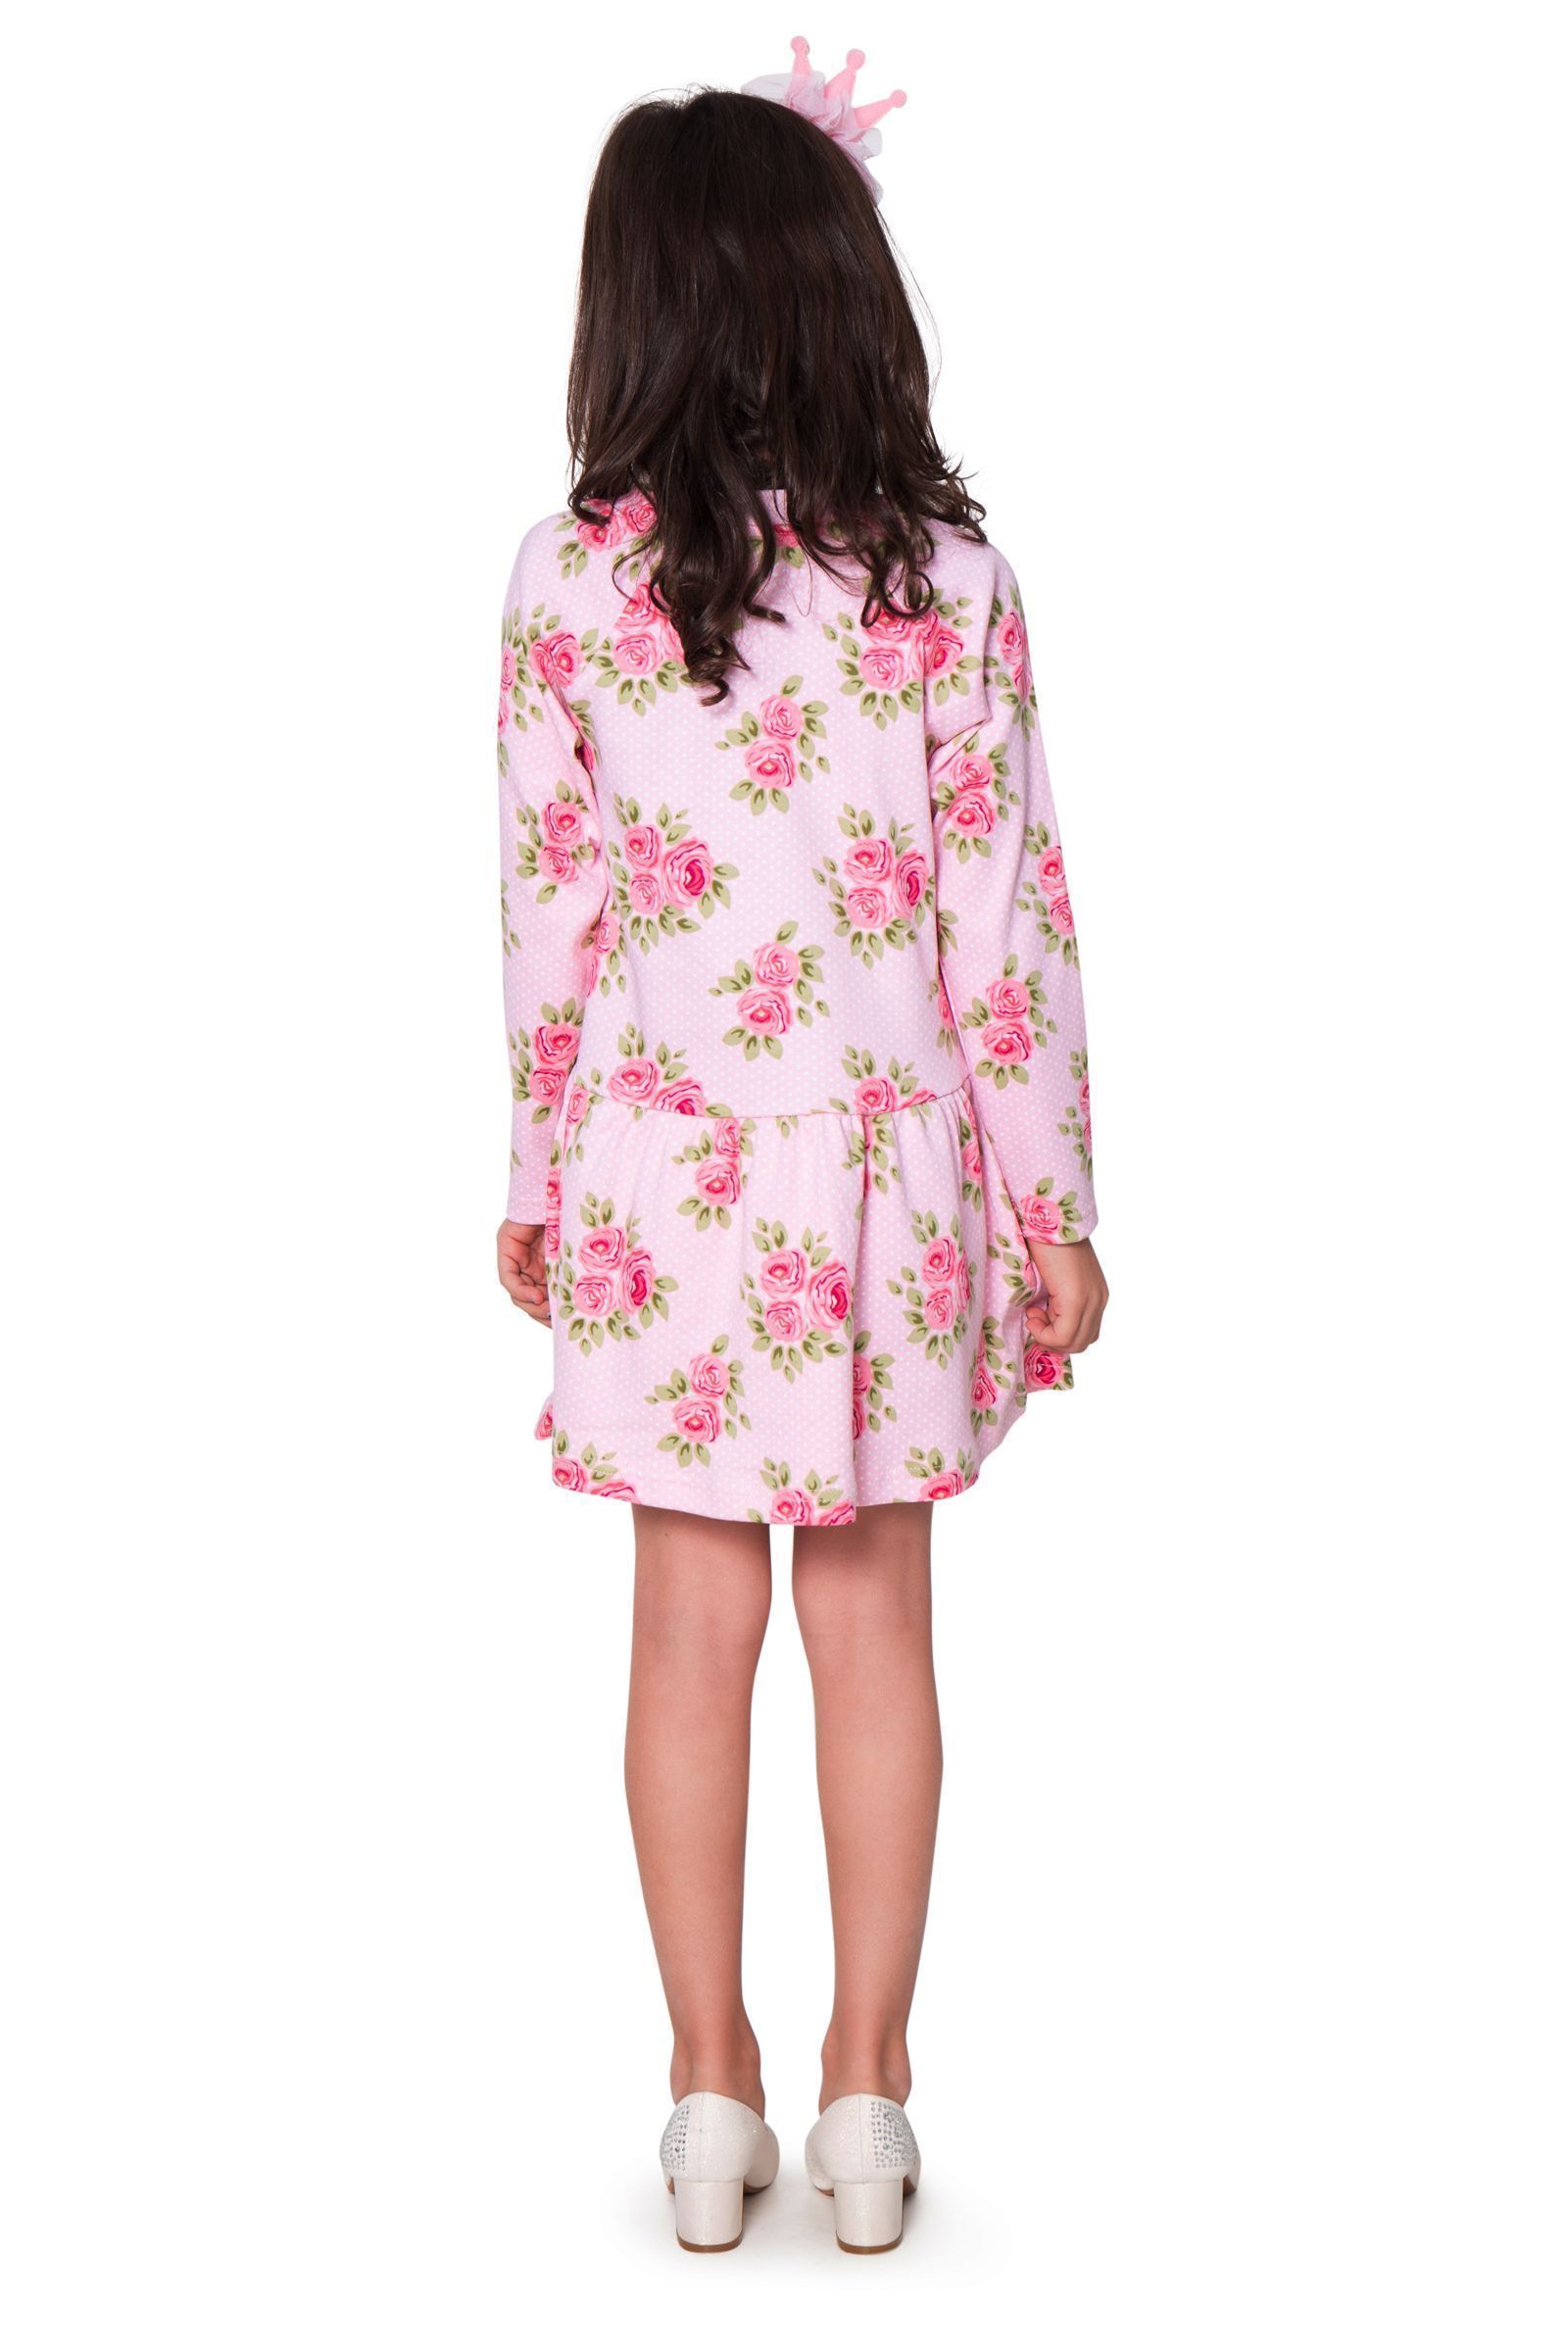 Платье-ПЛ01-2808 оптом от производителя детской одежды 'Алёна'